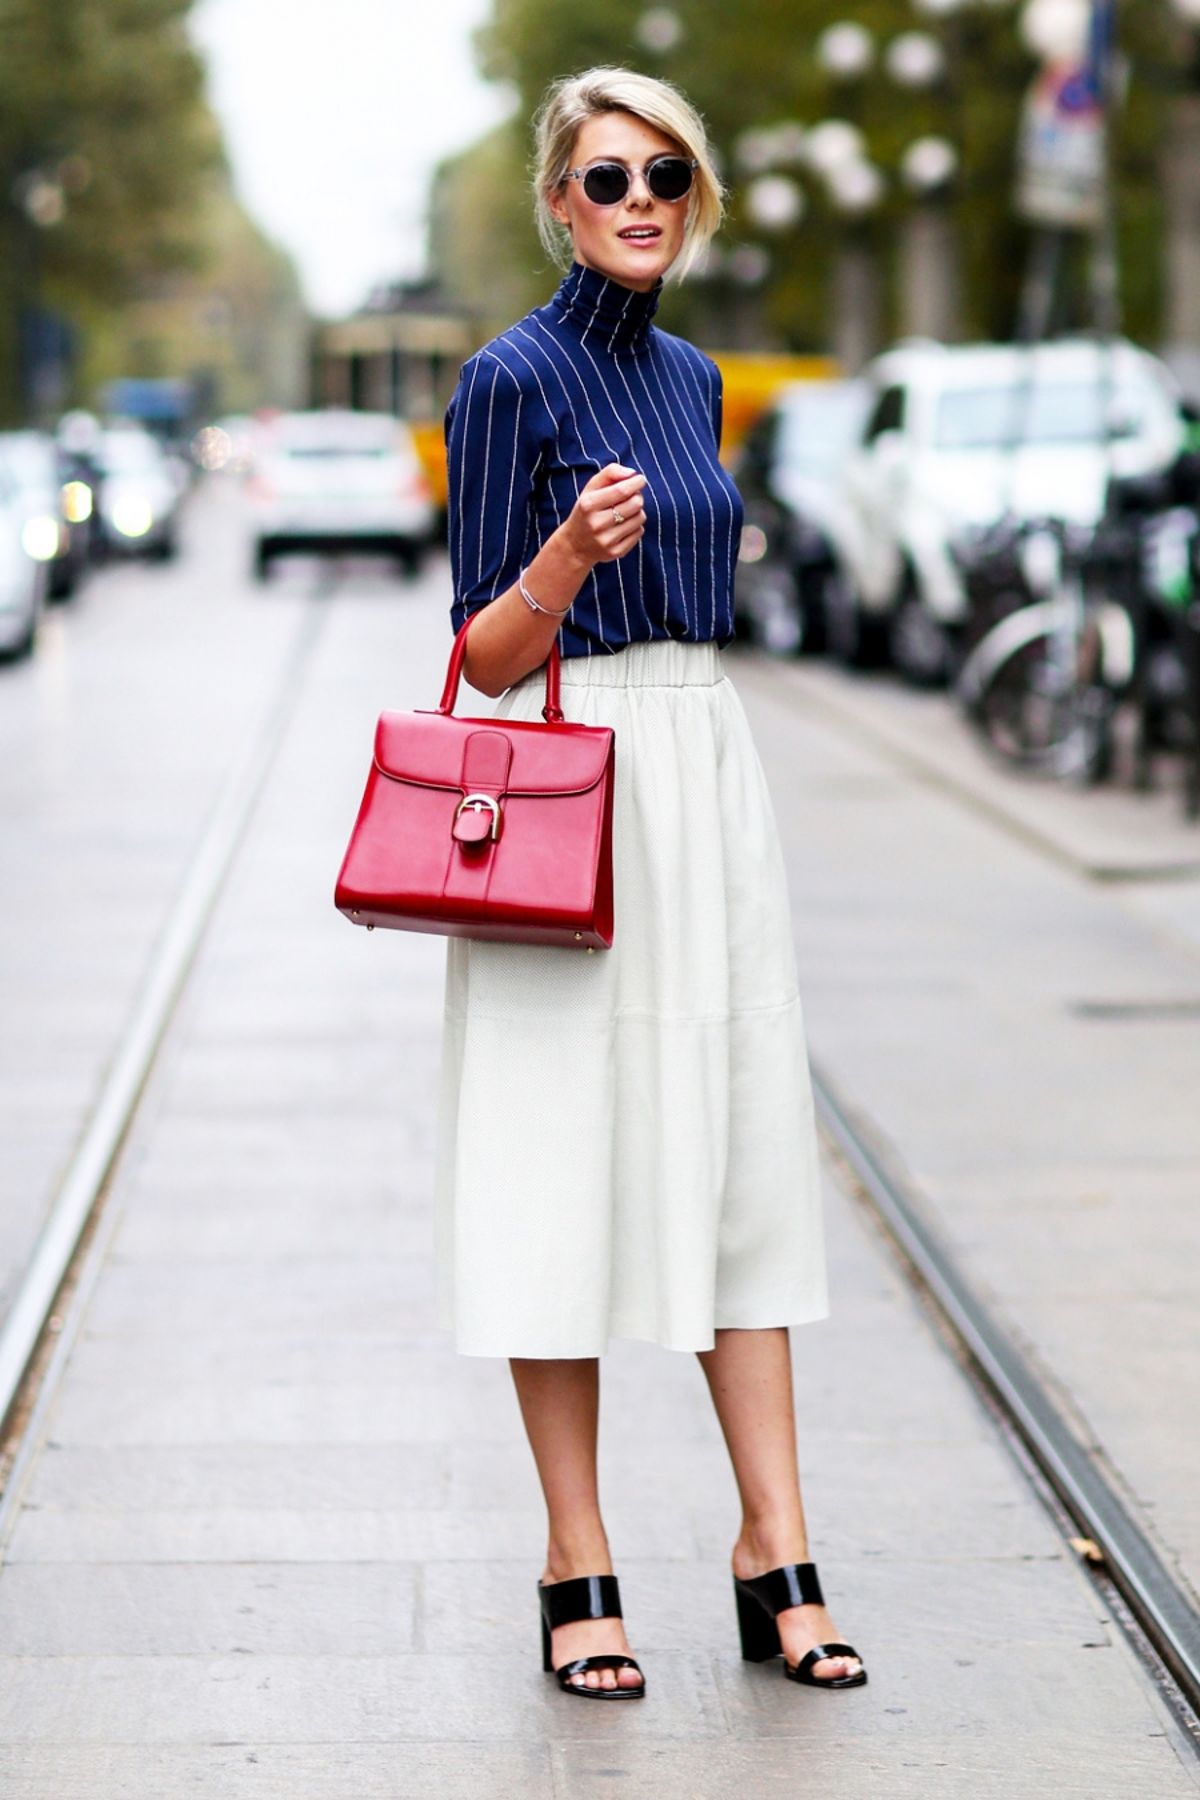 Белая юбка темно синего цвета и красная сумка.